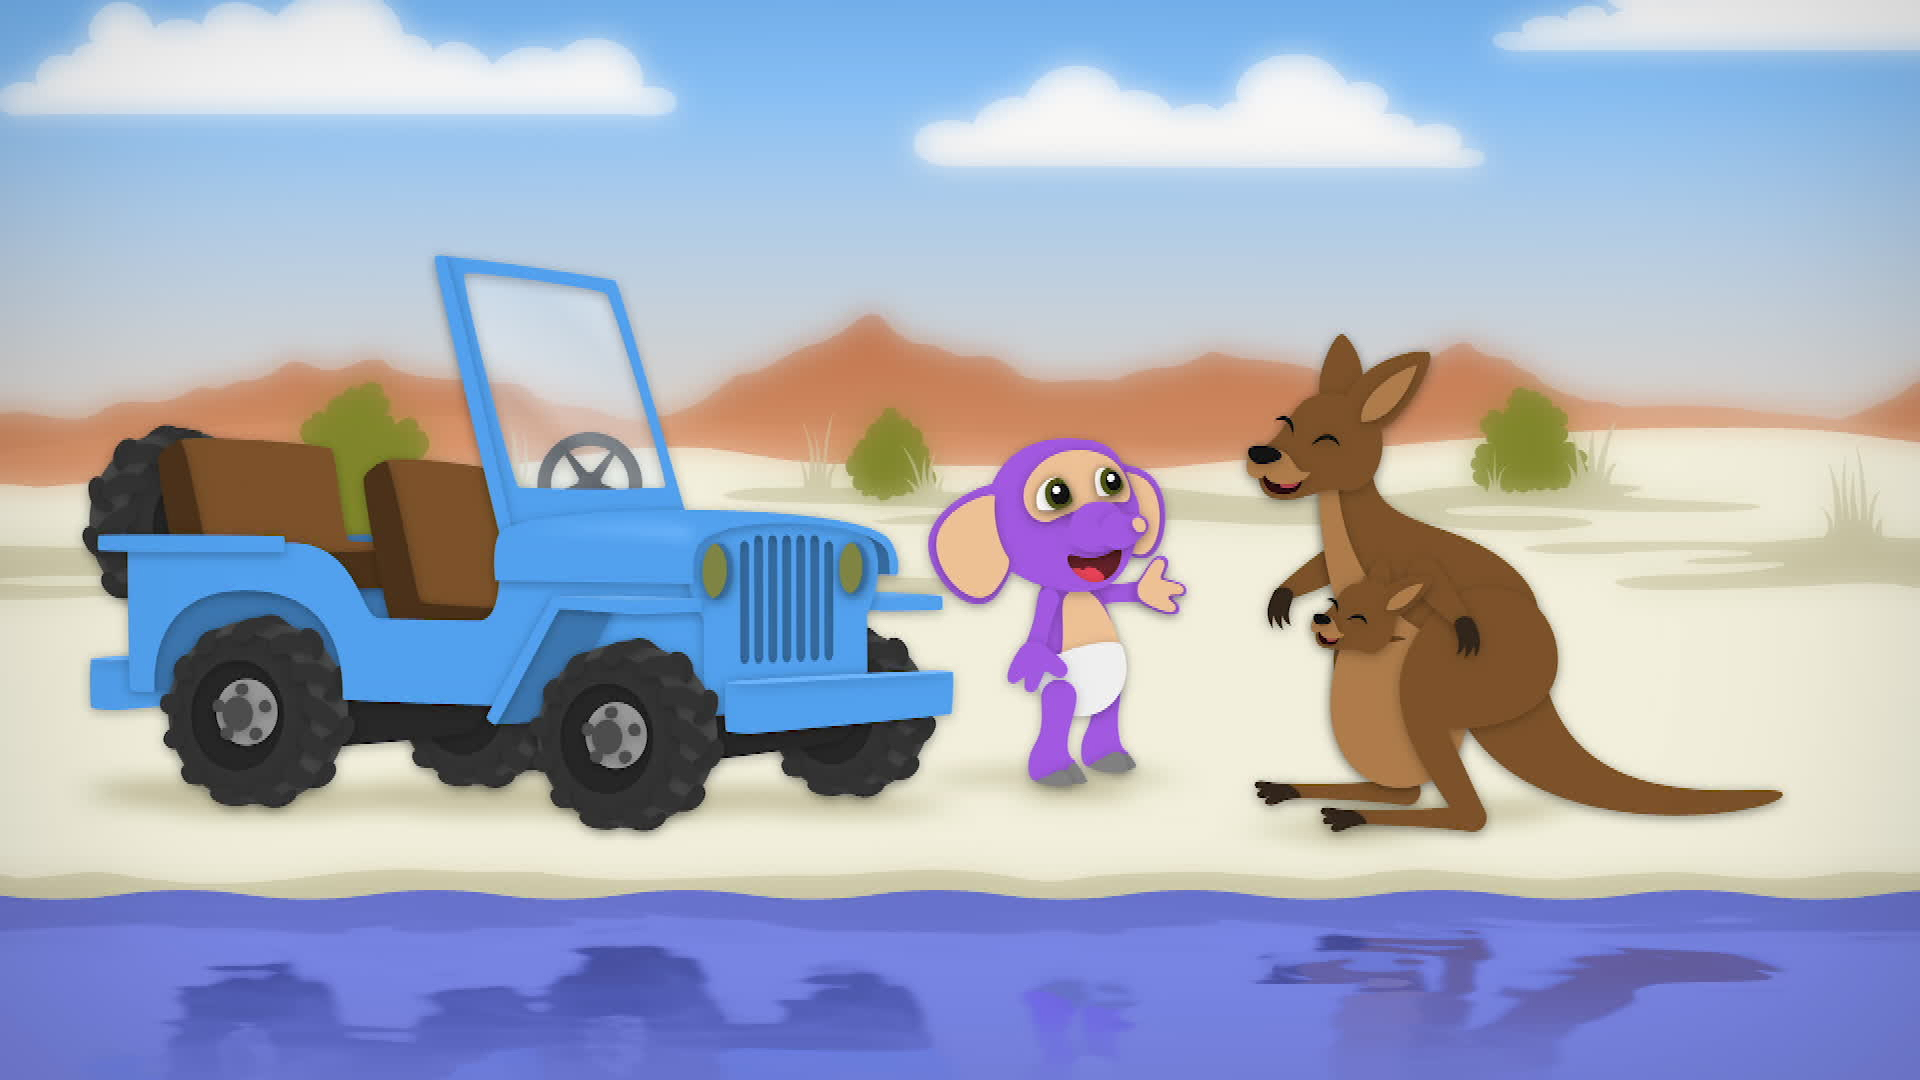 Et bilde hentet fra en animasjonsfilm for barn. Vi ser figuren Fantus som hilser på en smilende kenguru.